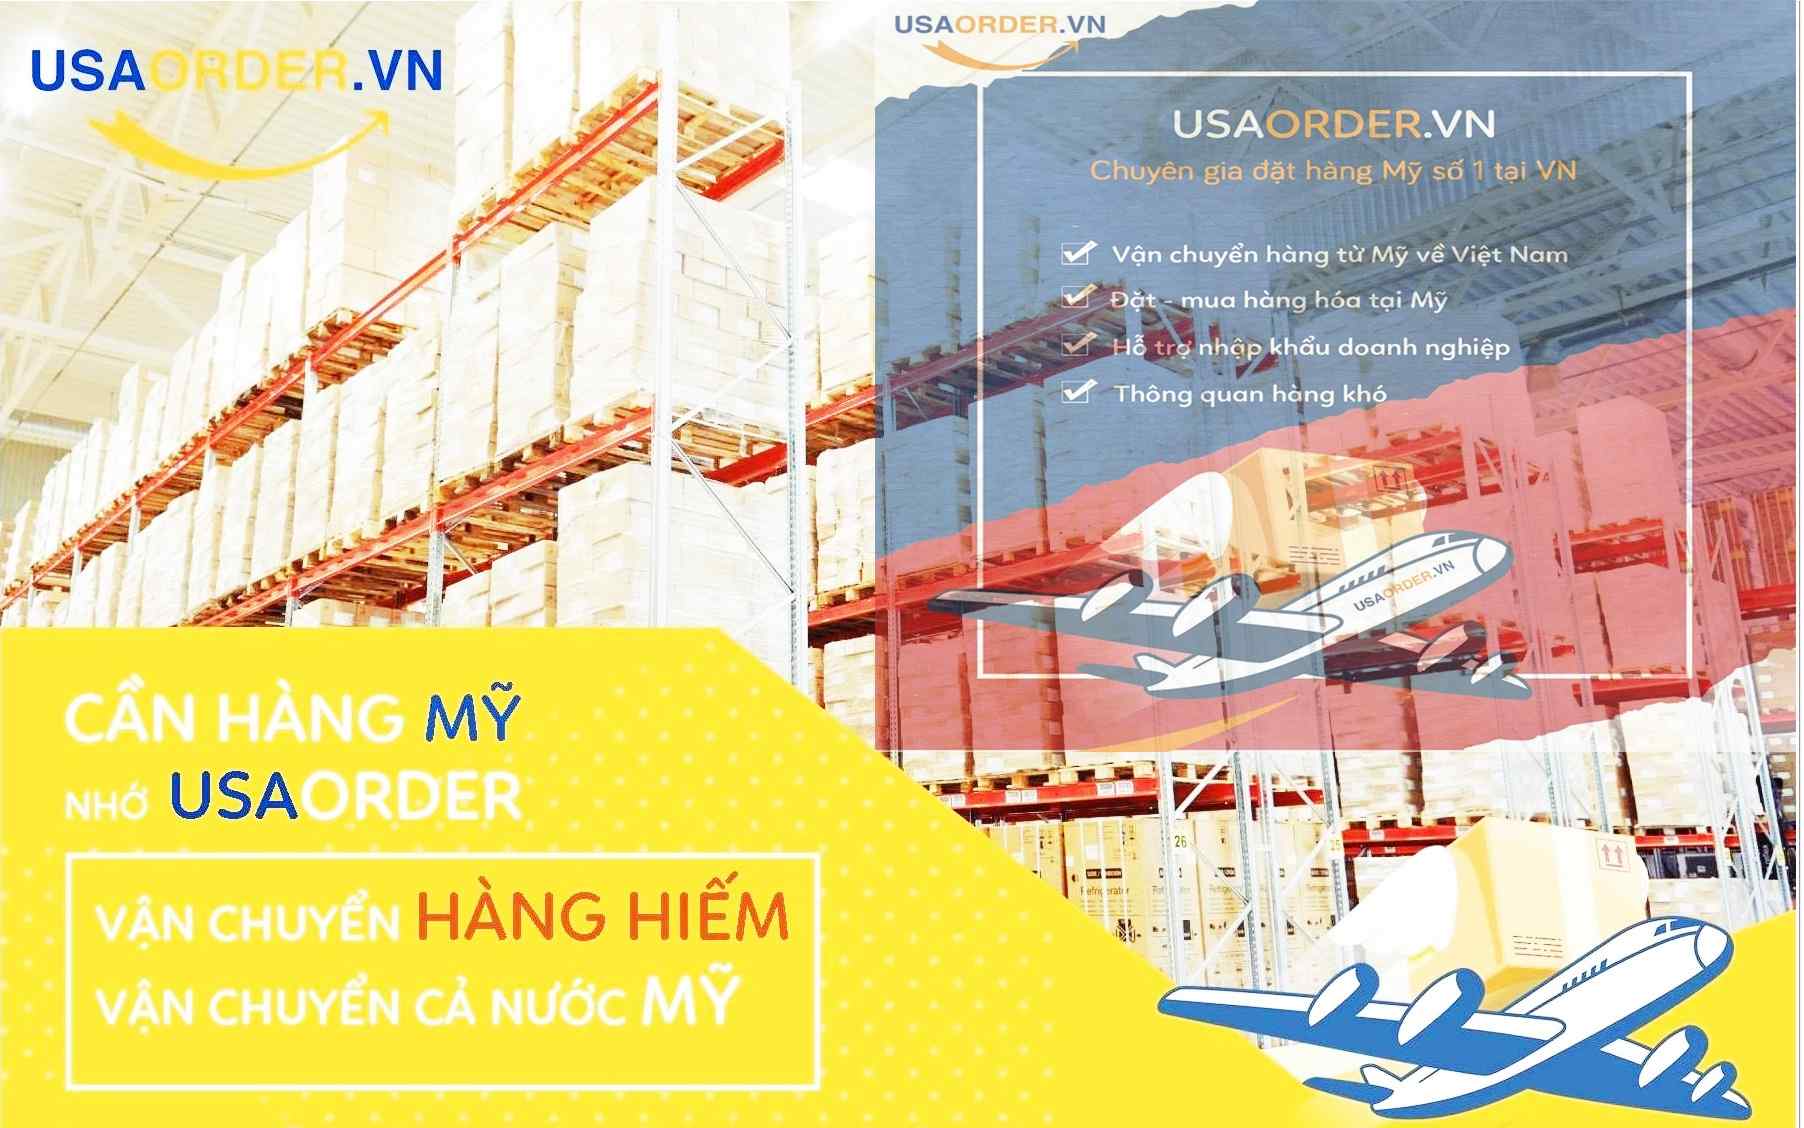 Nhận nhập khẩu hàng từ Mỹ về Việt Nam giá rẻ